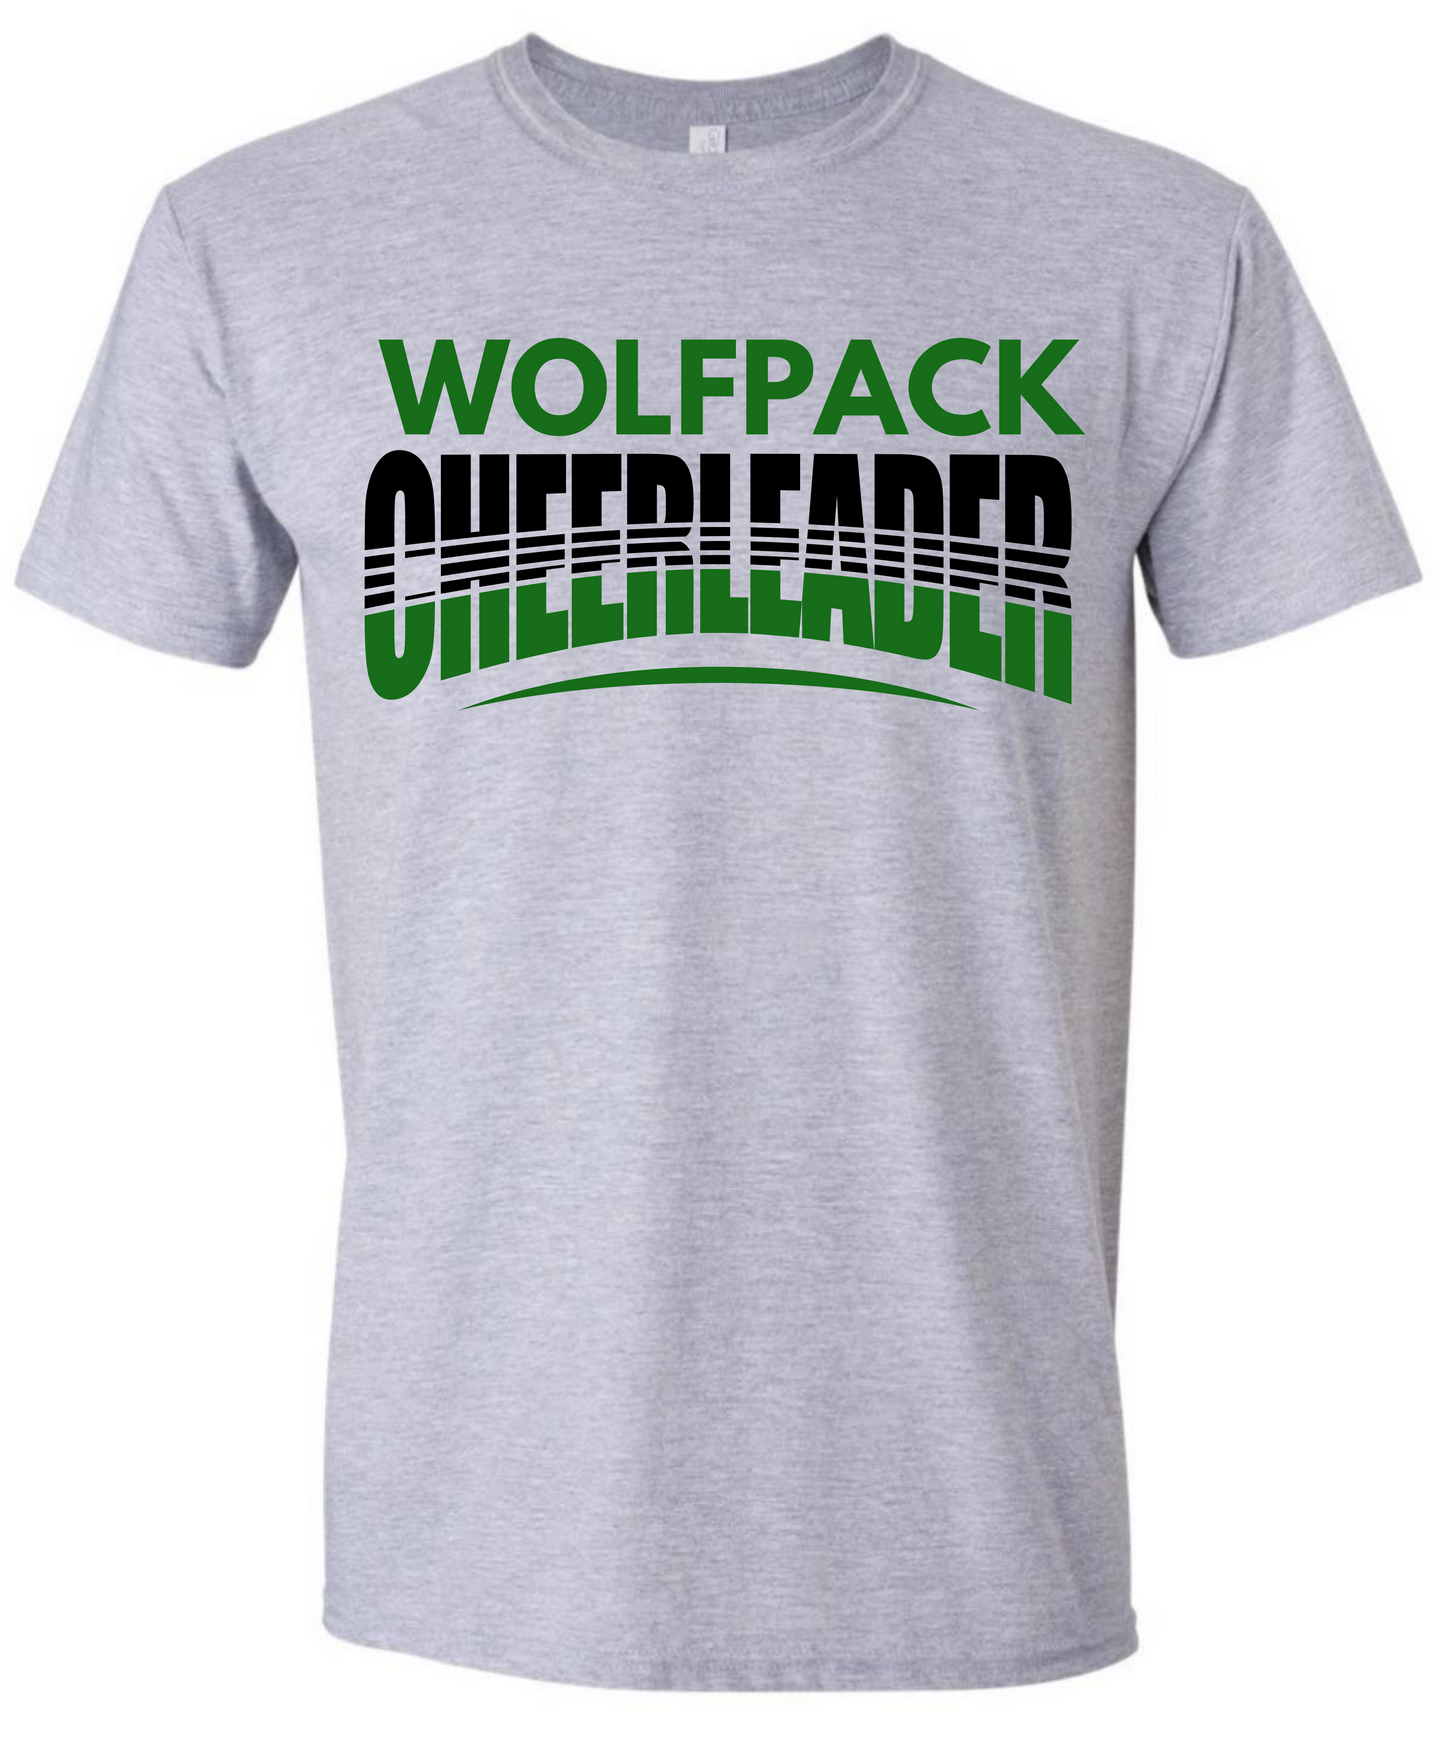 Wolfpack Cheerleader Tshirt